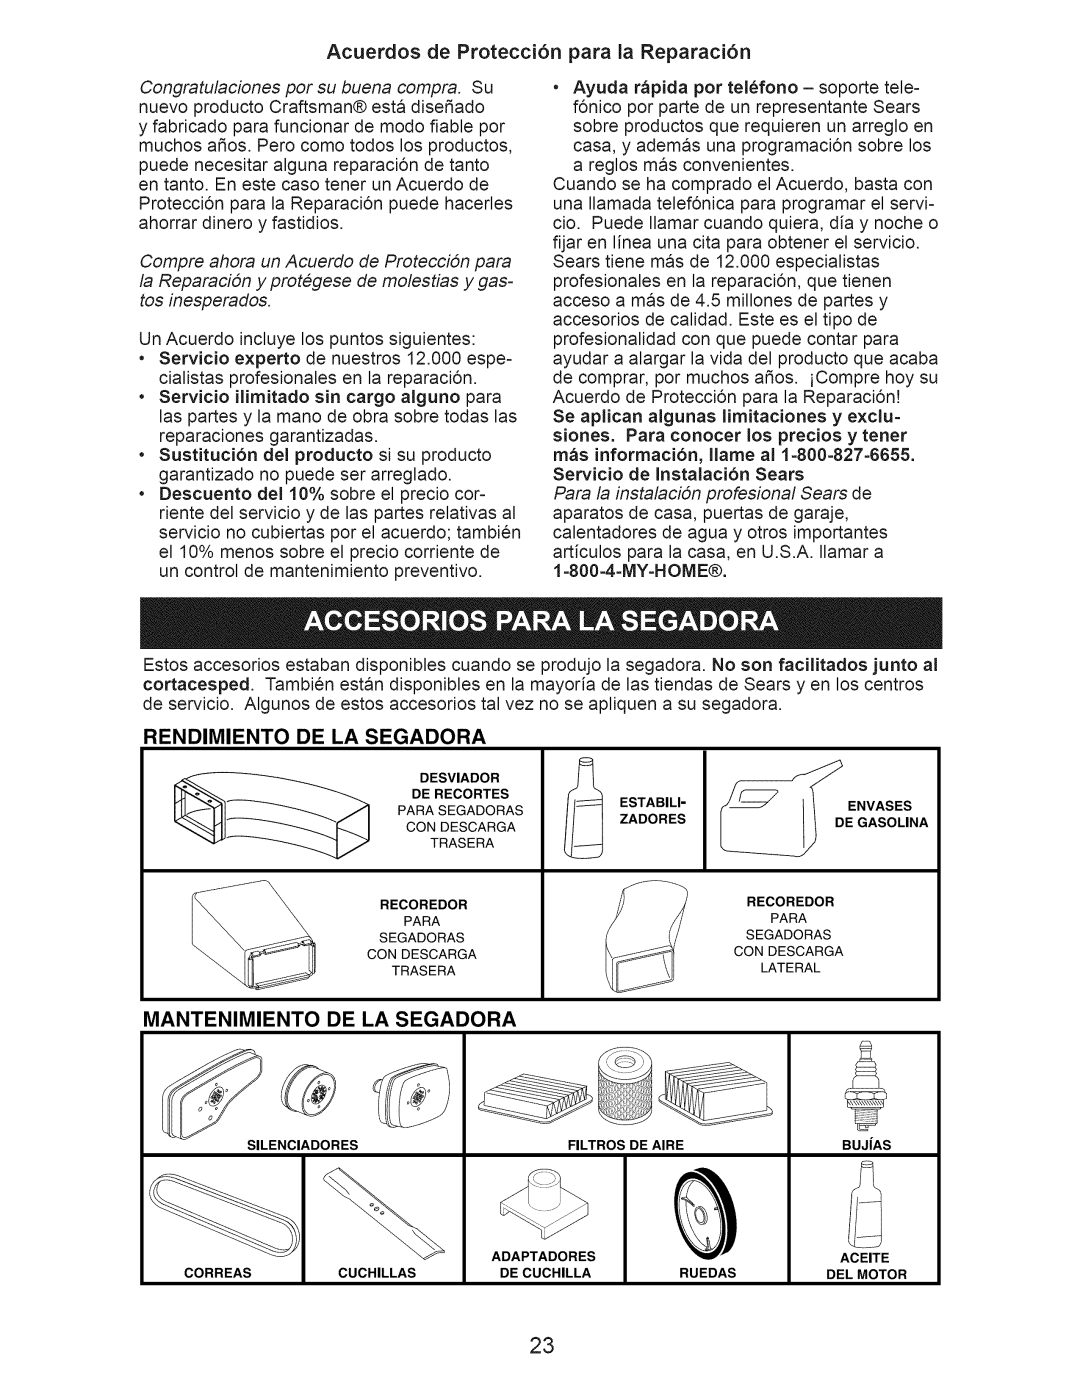 Craftsman 917.376404 owner manual Acuerdos de Protecci6n para la Reparaci6n, Rendimiento, De La Segadora, Mantenimiento 